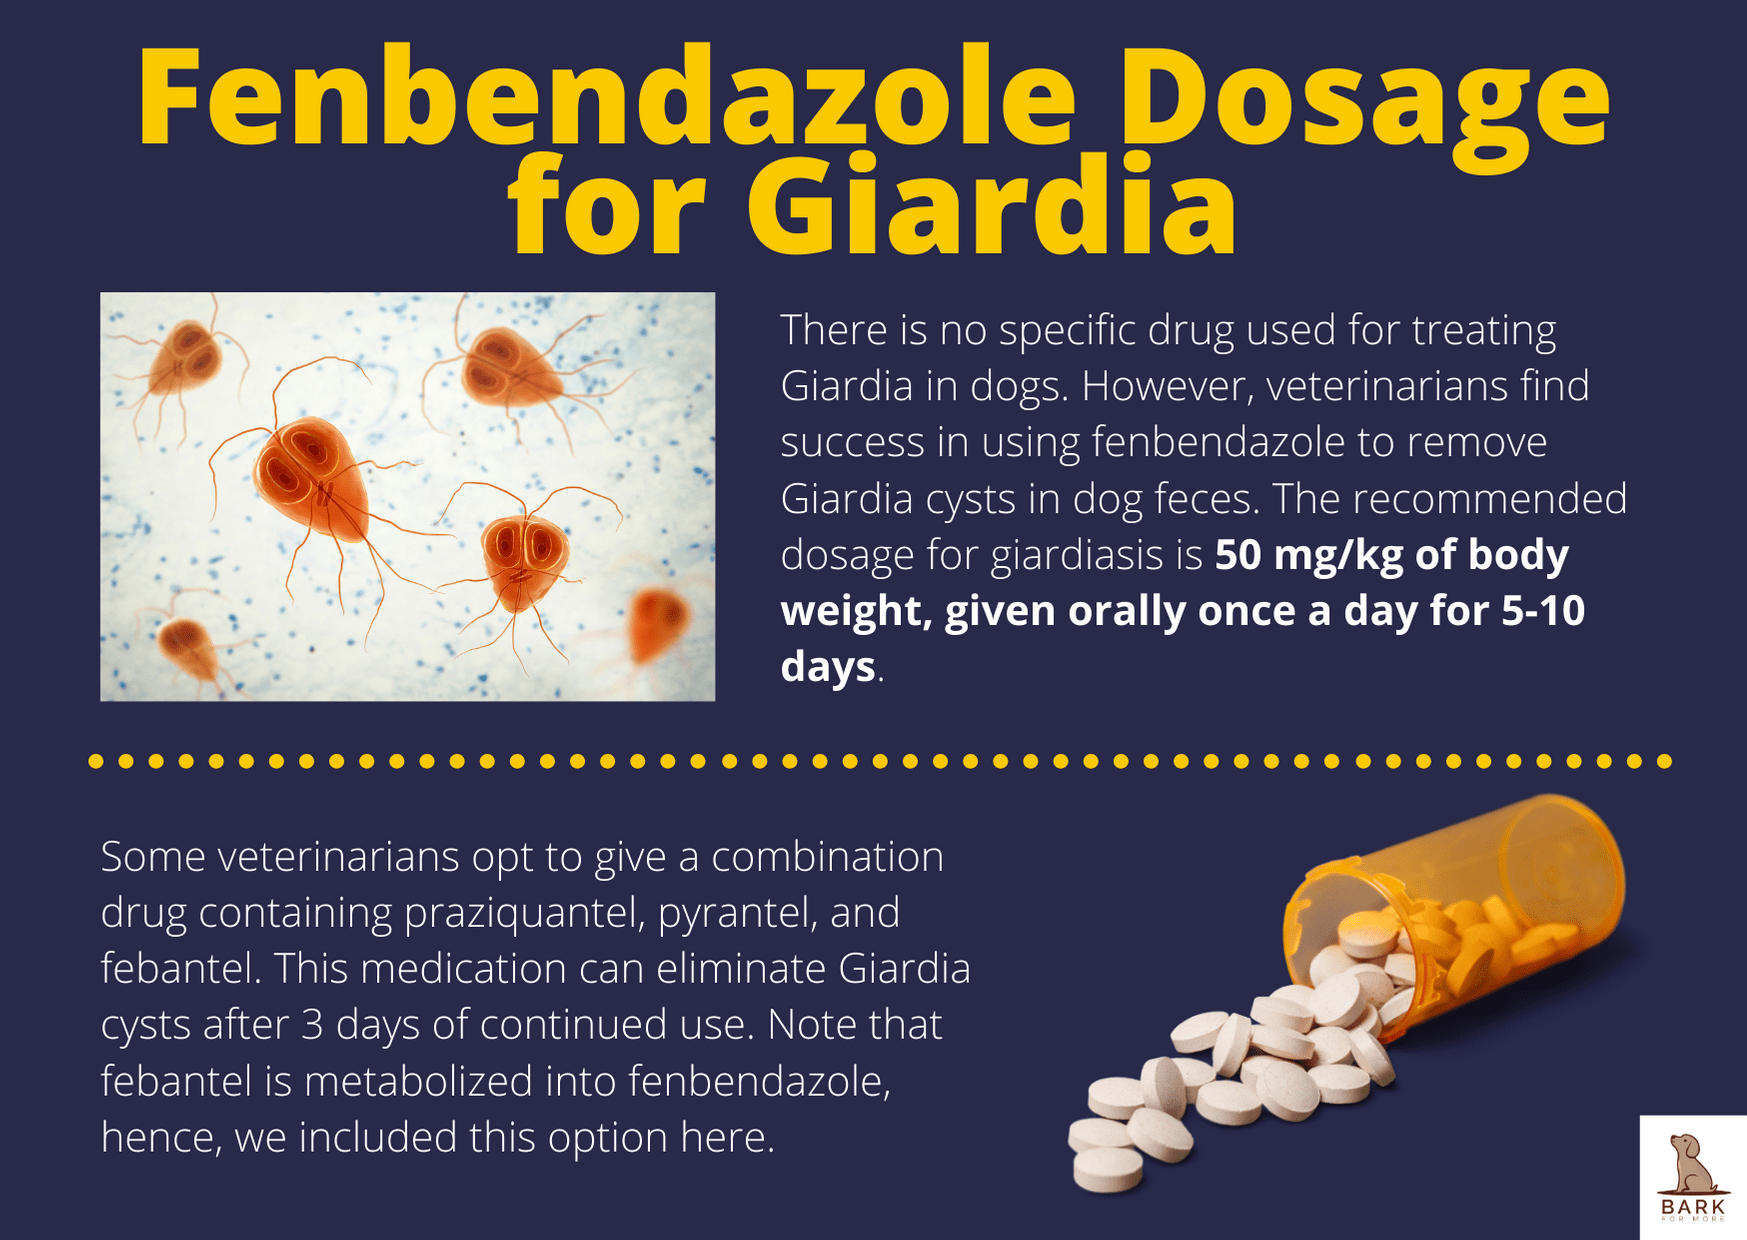 Fenbendazole Dosage for Giardia